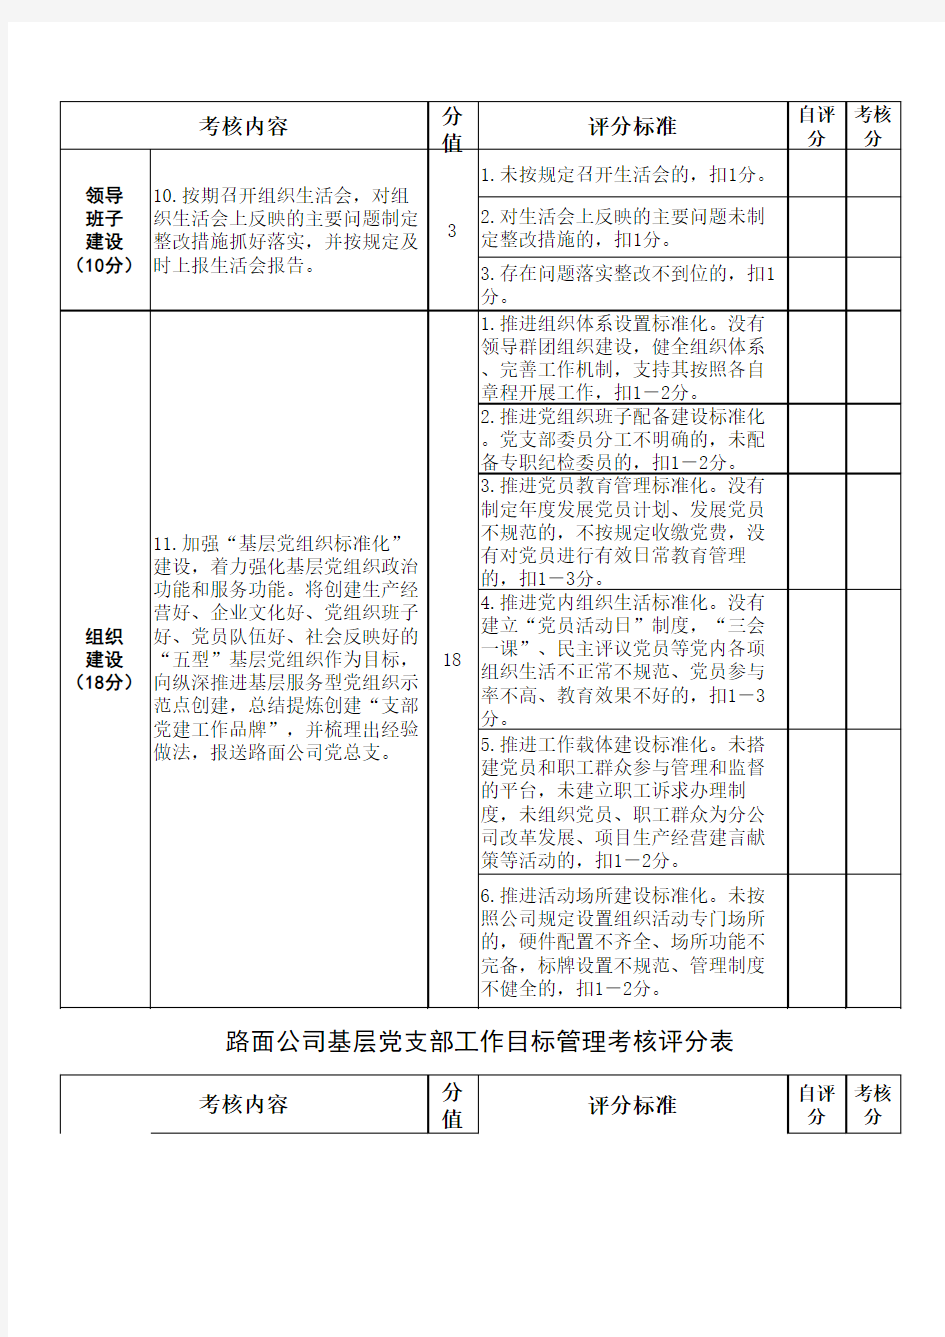 基层党支部工作目标管理考核评分表(2017年)